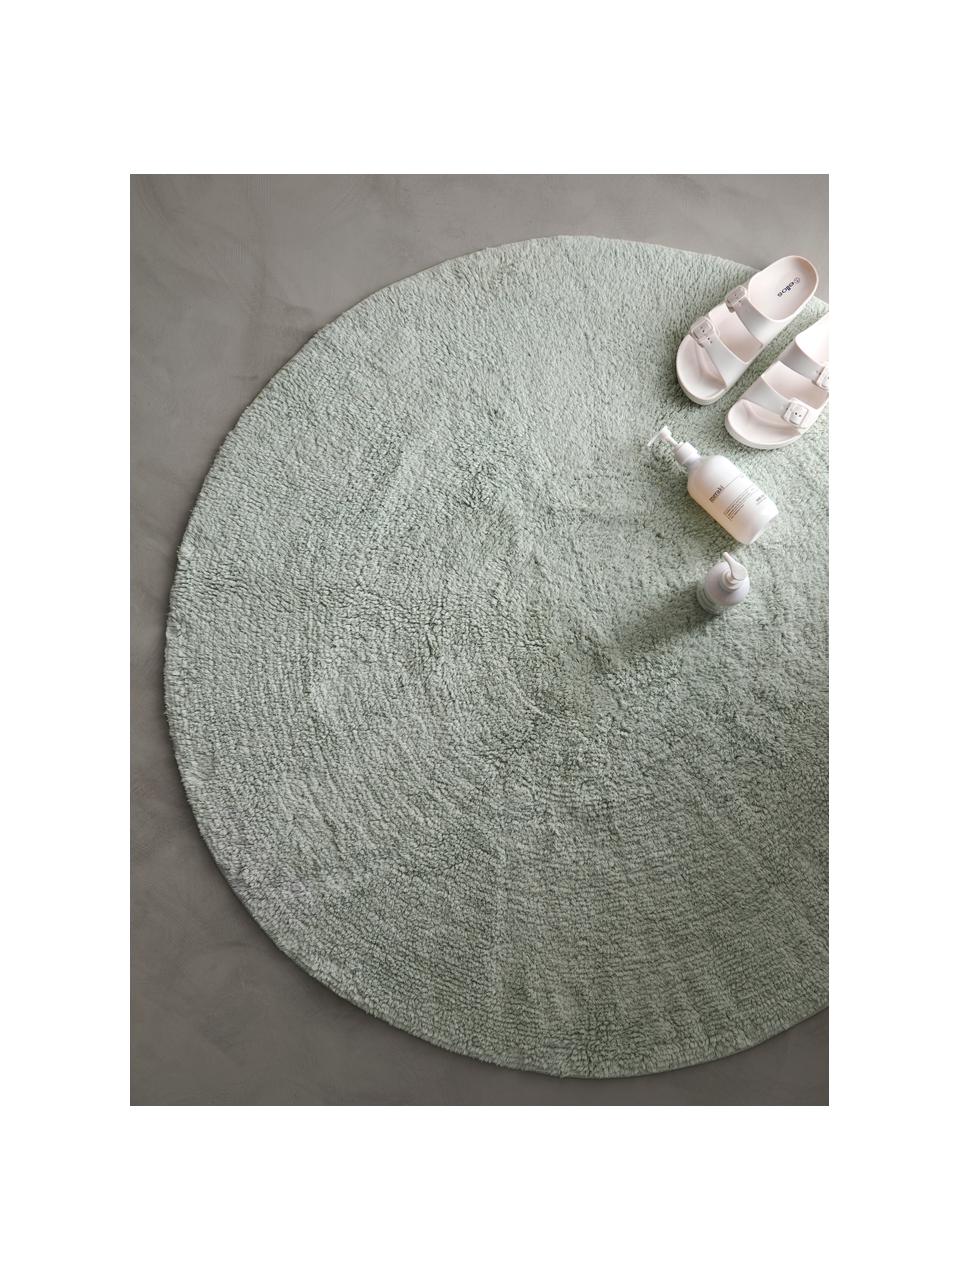 Dywanik łazienkowy z bawełny Ingela, 100% bawełna, Zielony miętowy, Ø 120 cm